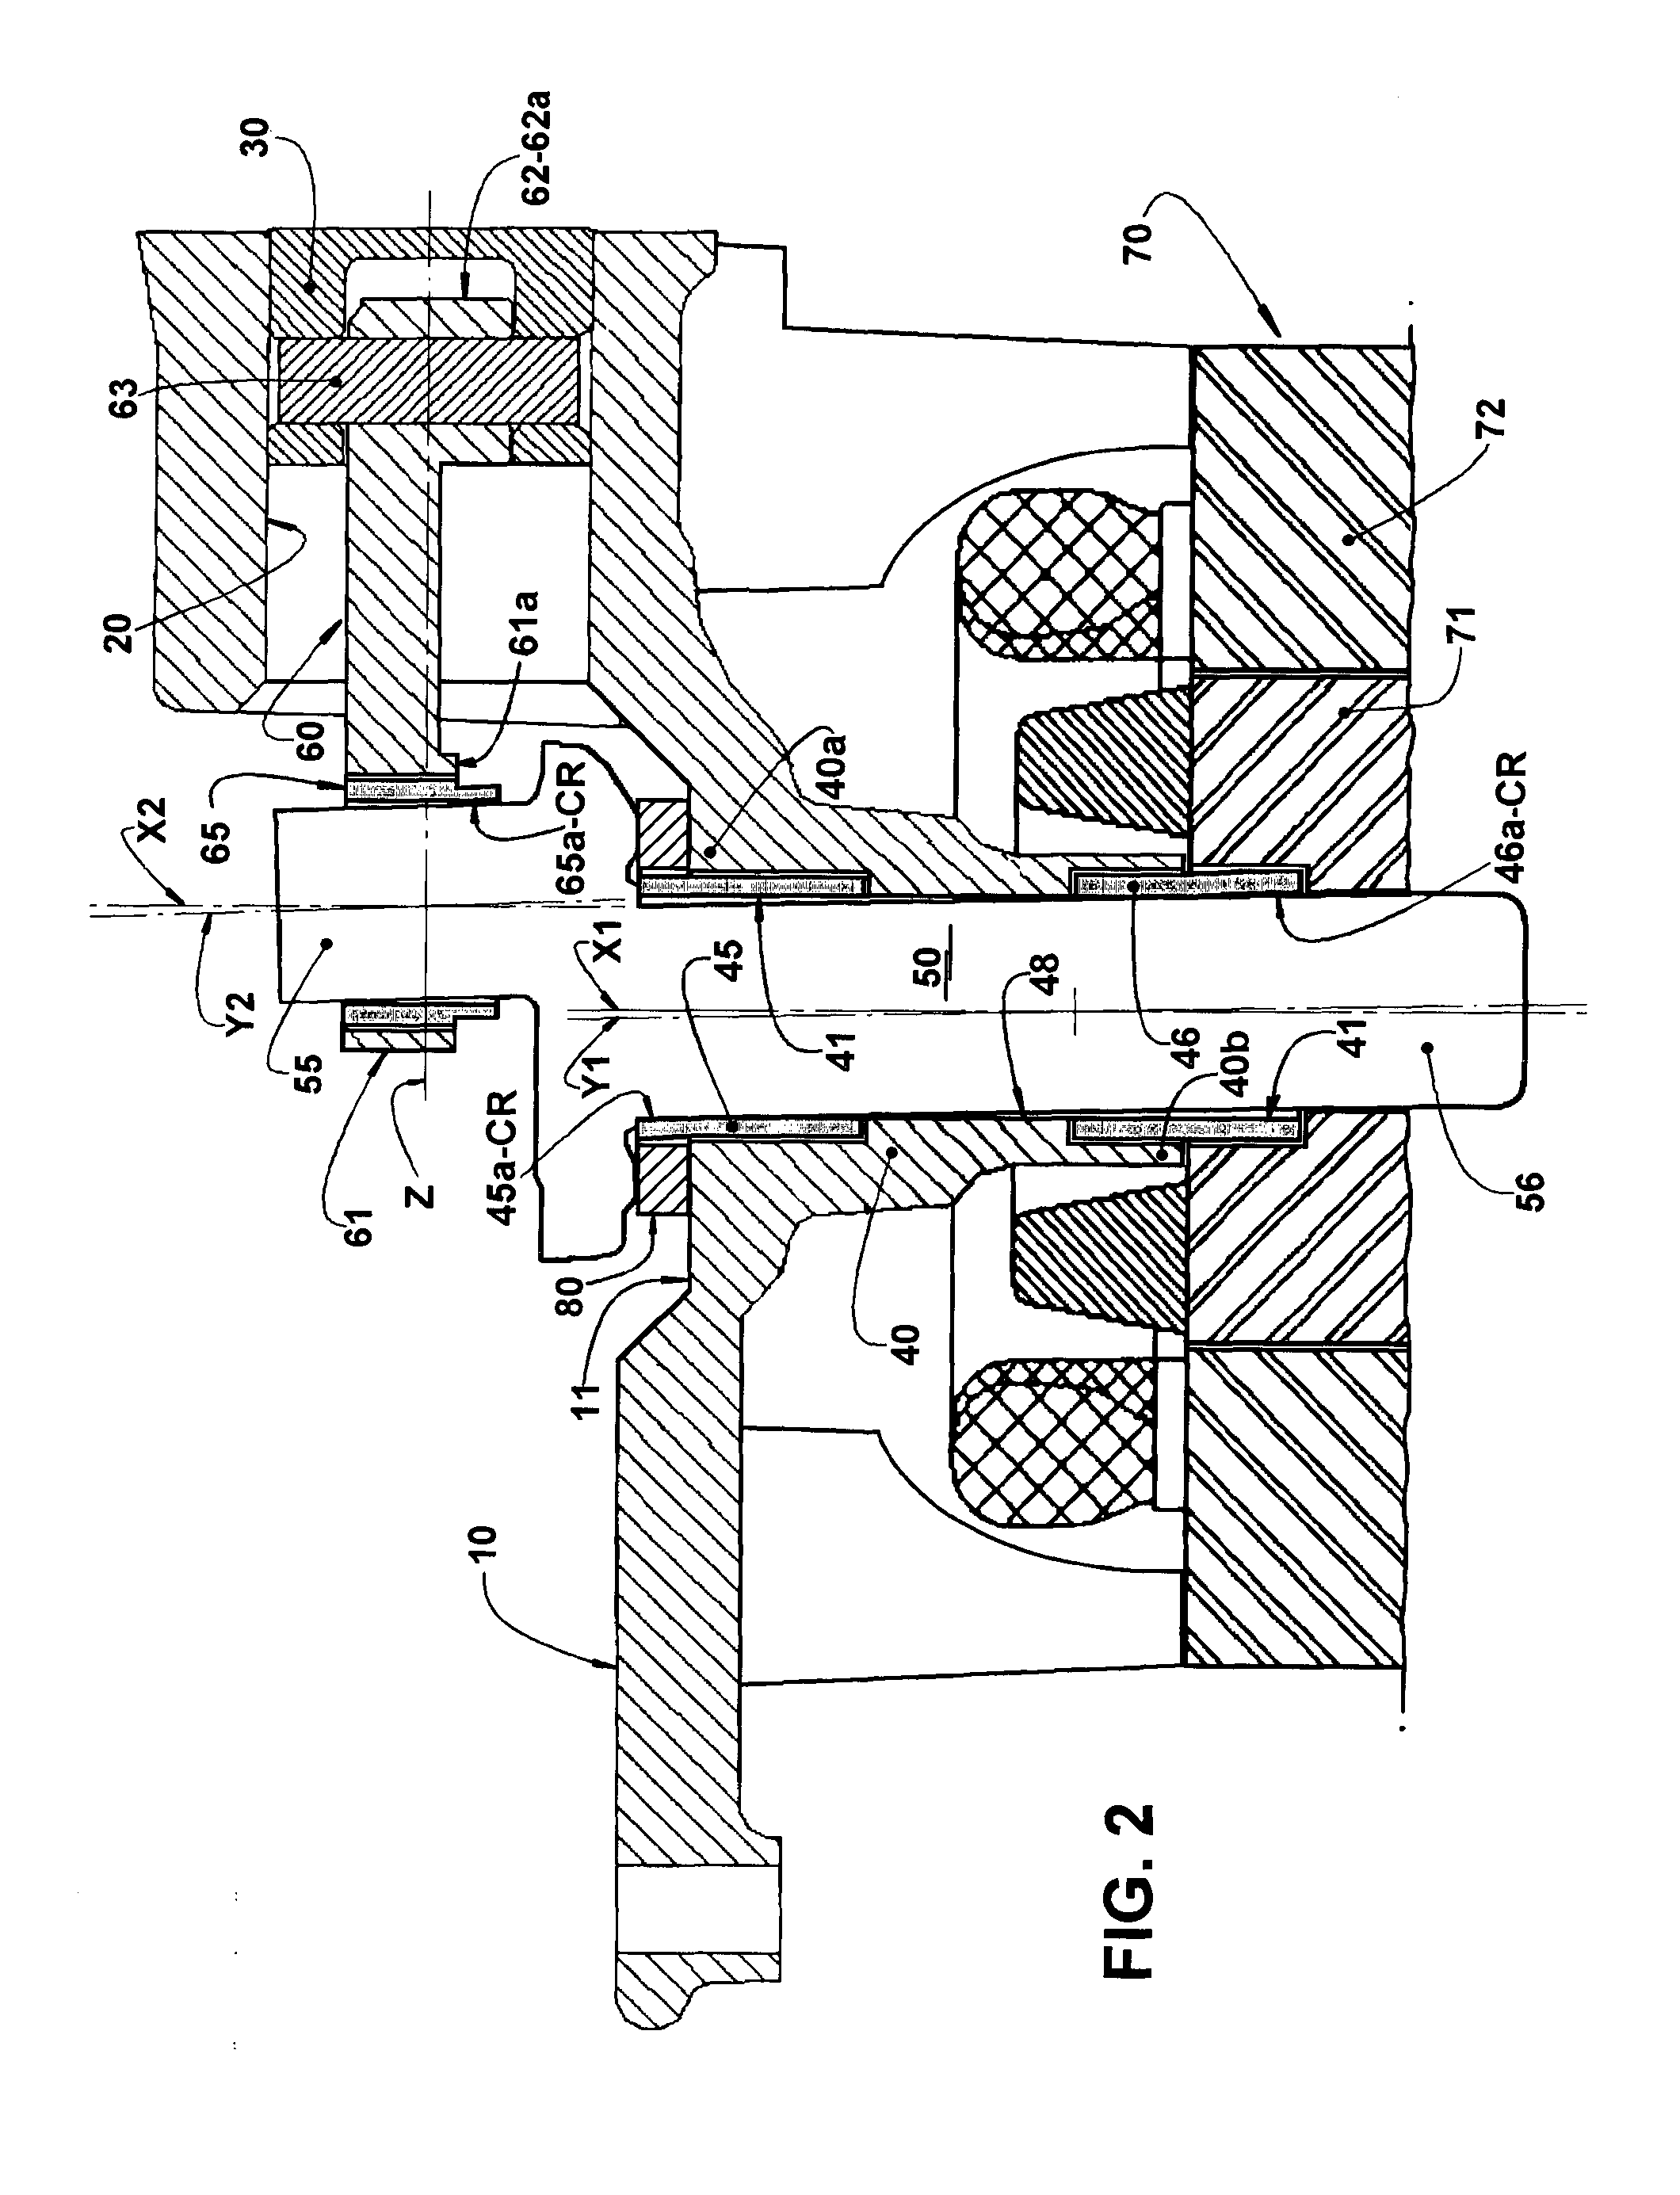 Bearing arrangements in a refrigeration reciprocating compressor